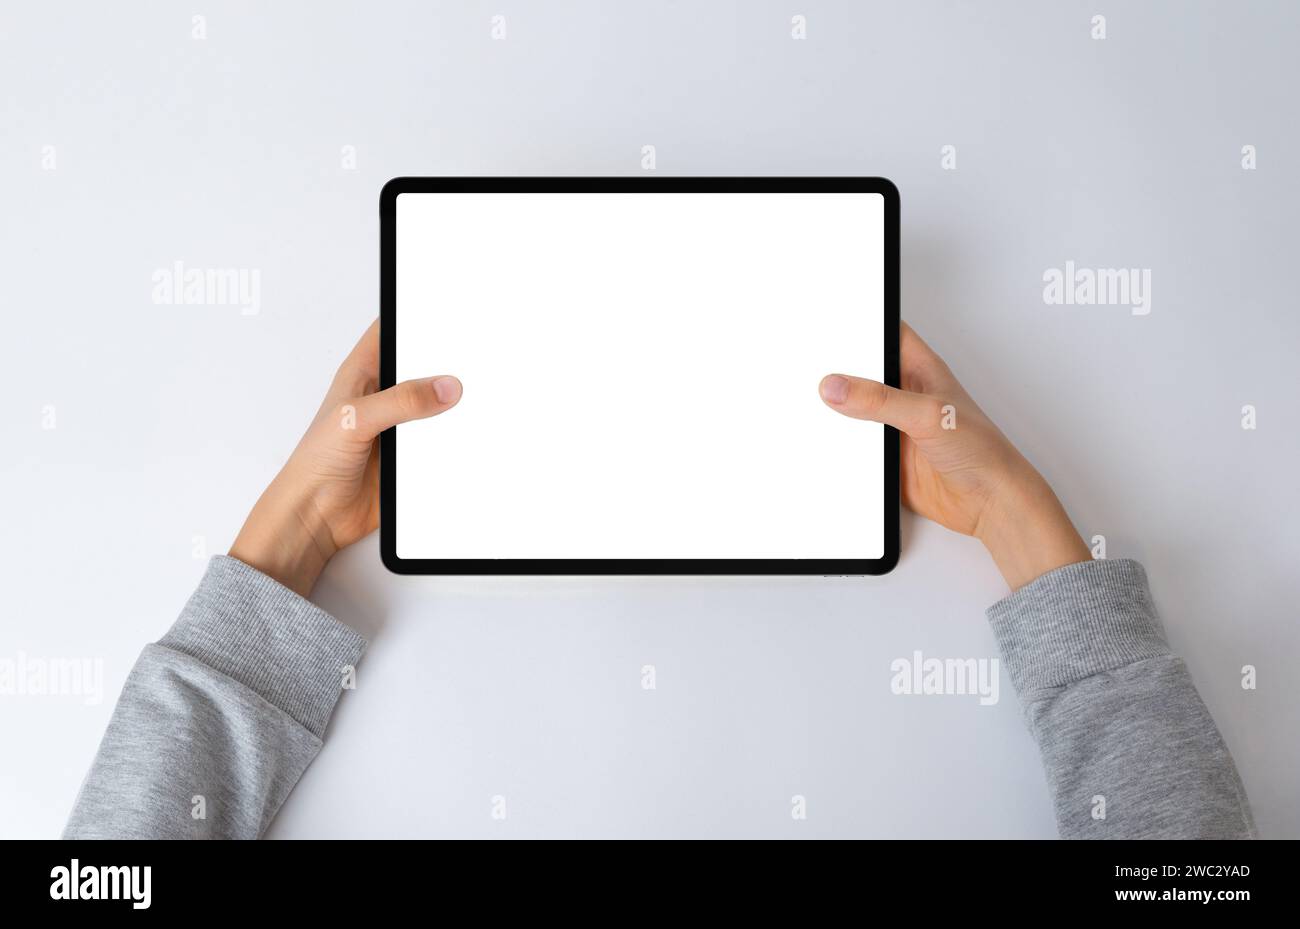 Vue de dessus des mains d'un enfant tenant une tablette horizontale sur un bureau. Composition de pose plate avec un écran isolé pour maquette, parfait pour mettre en valeur inter Banque D'Images